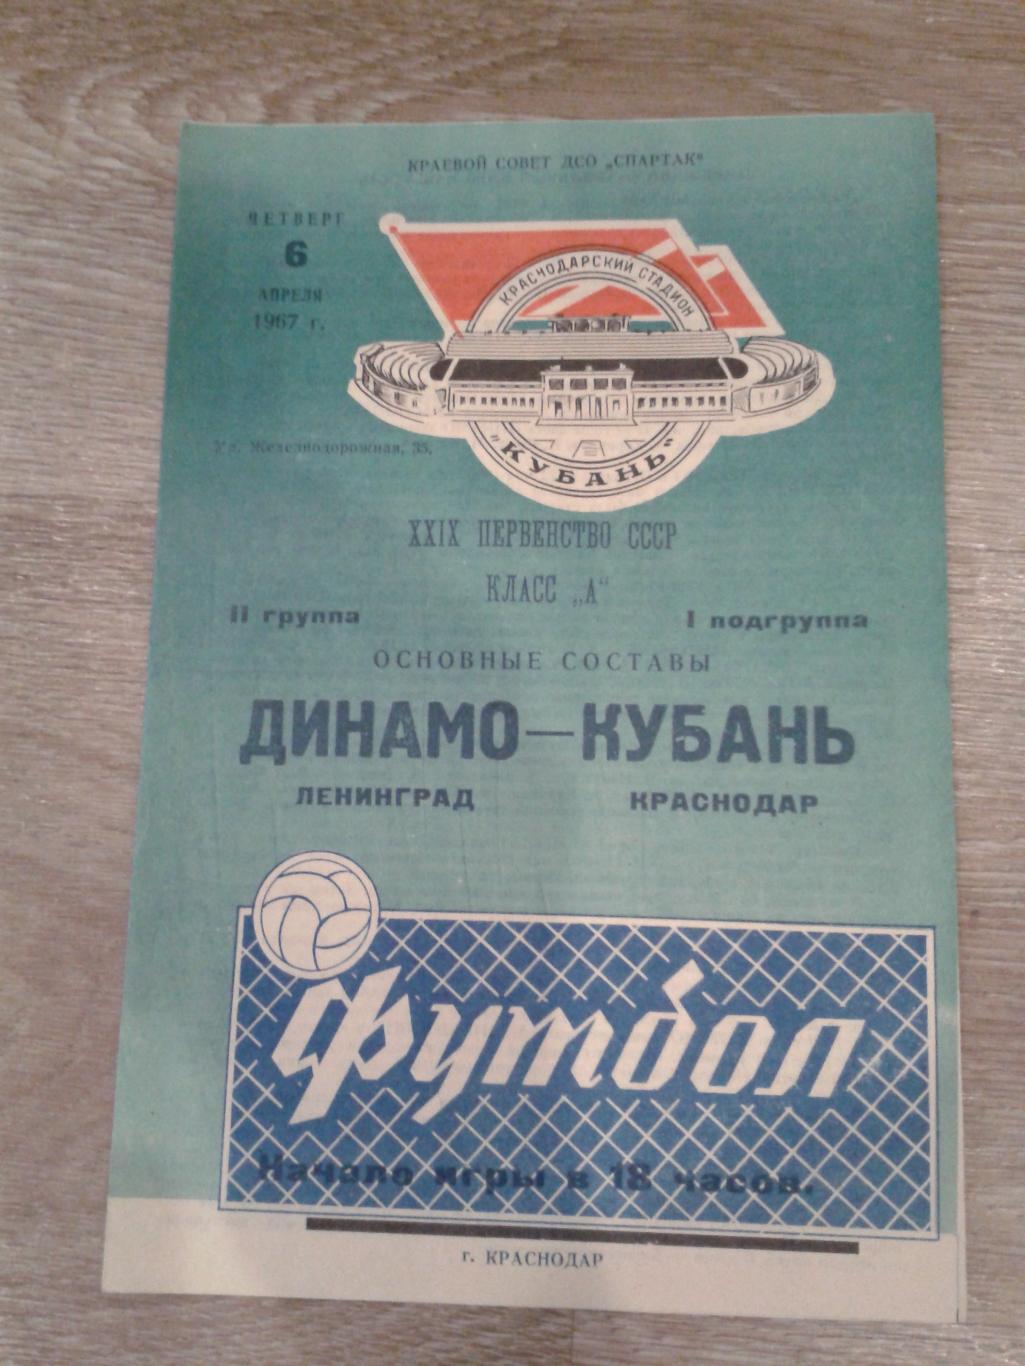 1967 Кубань Краснодар-Динамо Ленинград